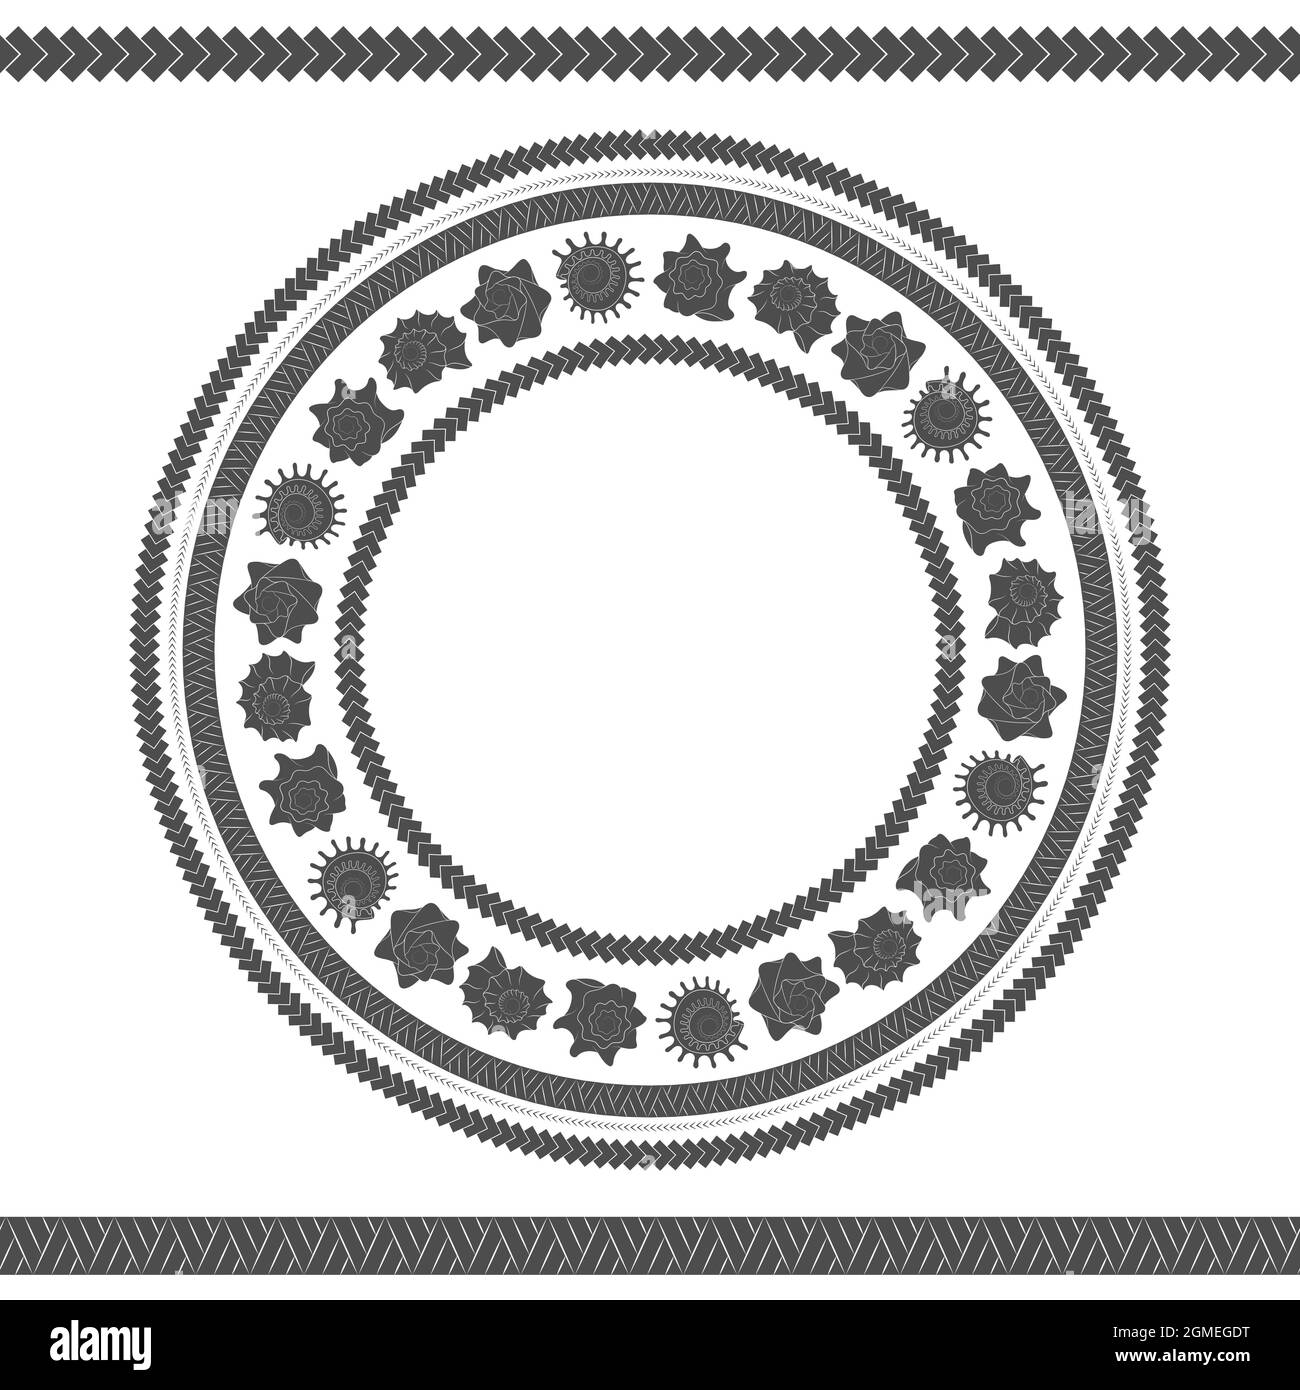 Nahtloses Muster mit Muscheln und polynesischen Mustern. Vektor schwarz-weiß runde Illustration. Stock Vektor